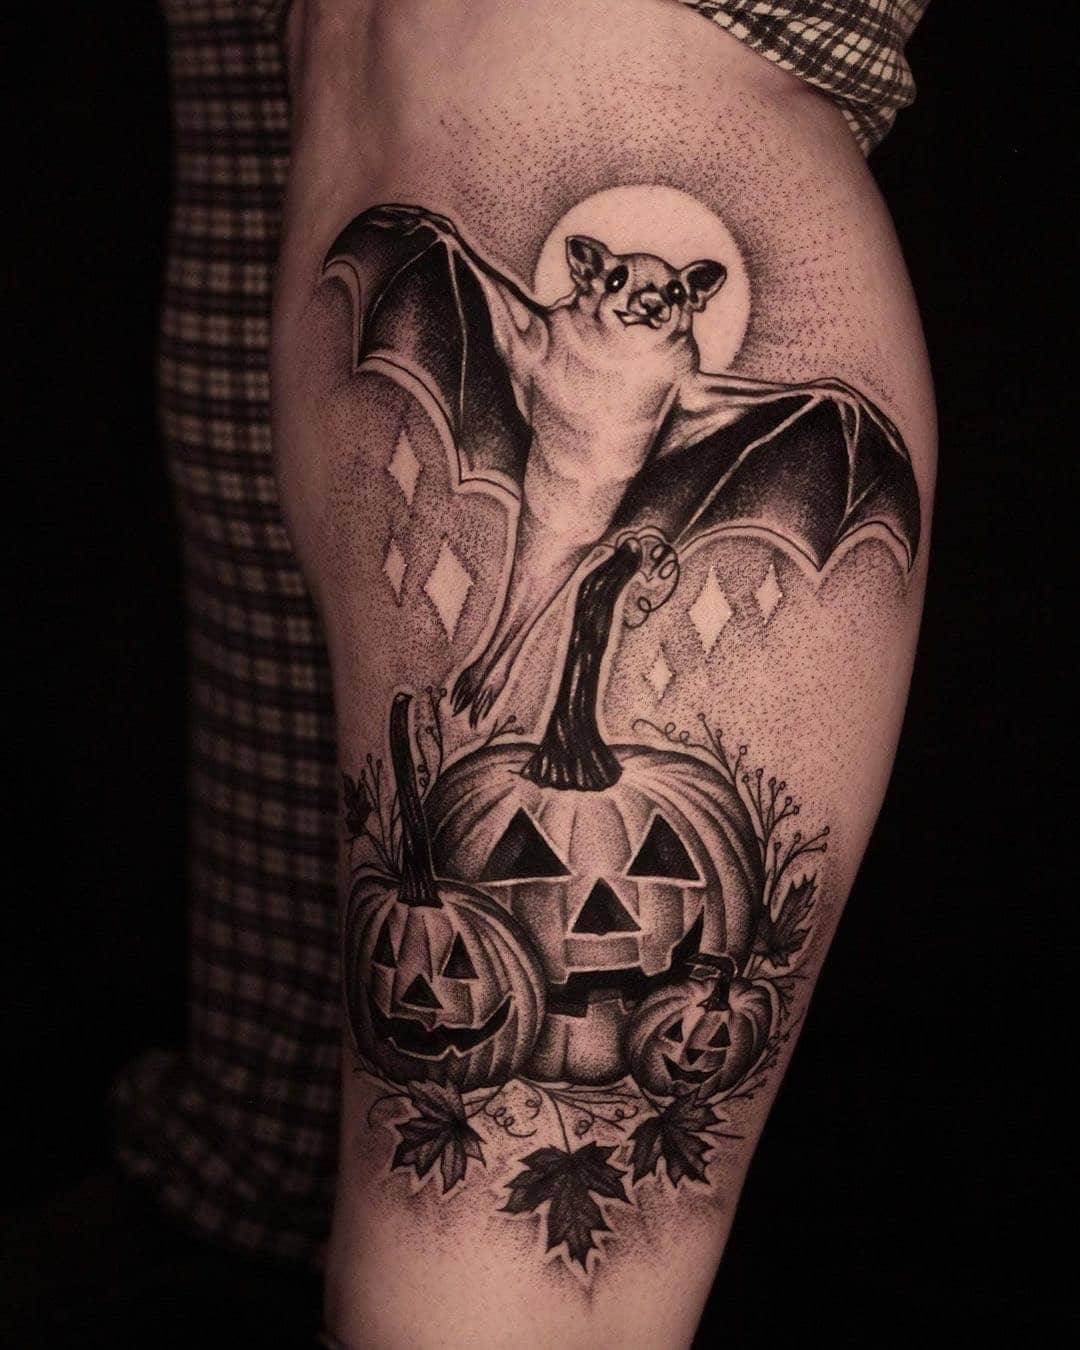 Bat and pumpkins by Liz!
lizminellitattoo 

                      